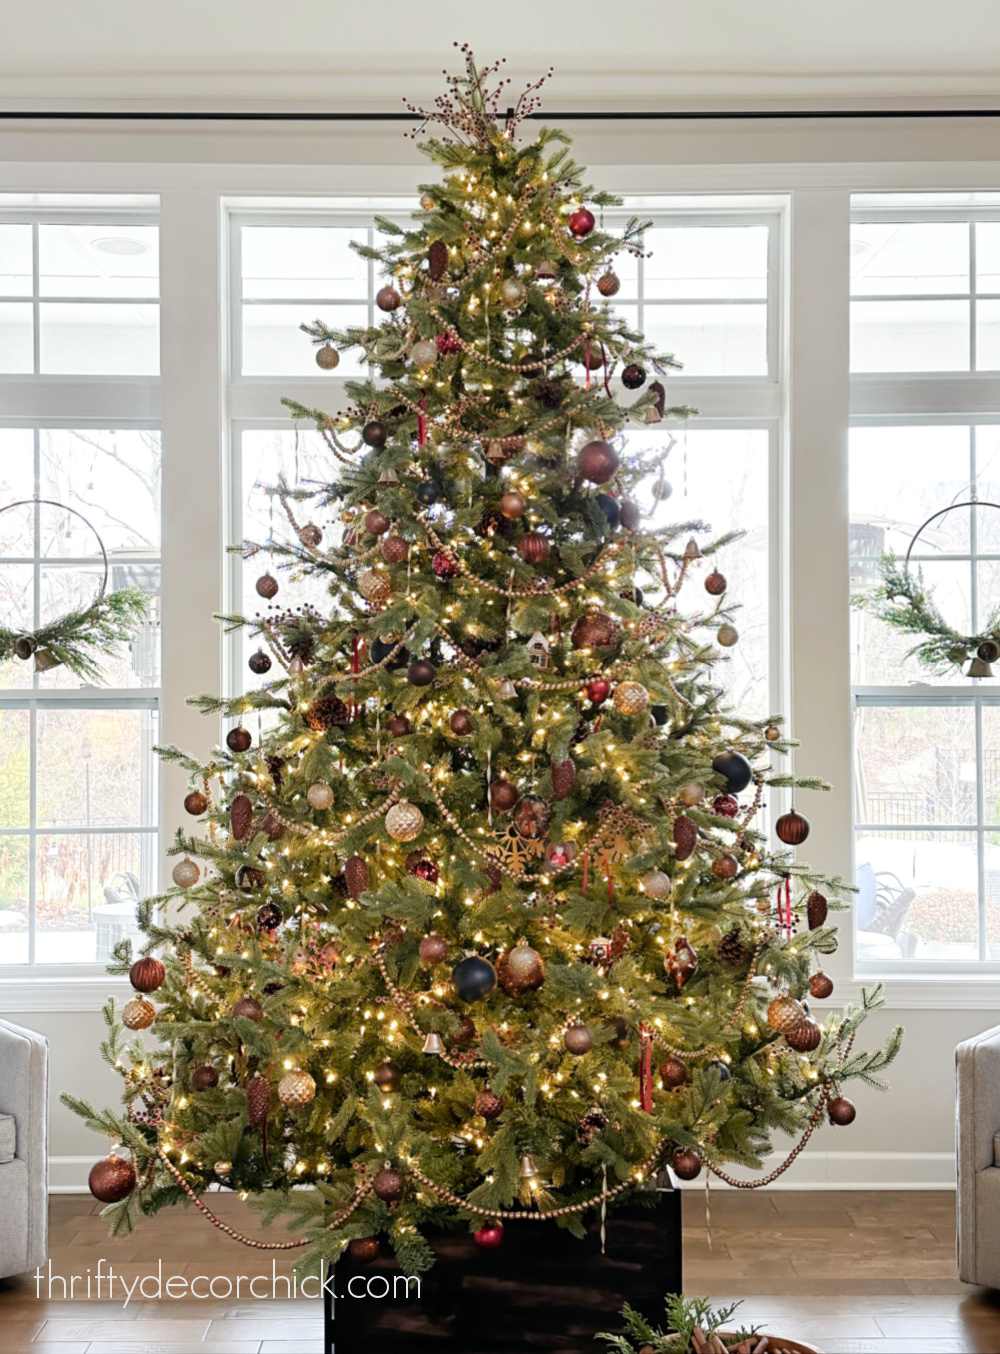 درخت کریسمس با رنگ های قهوه ای، آبی و مارونی